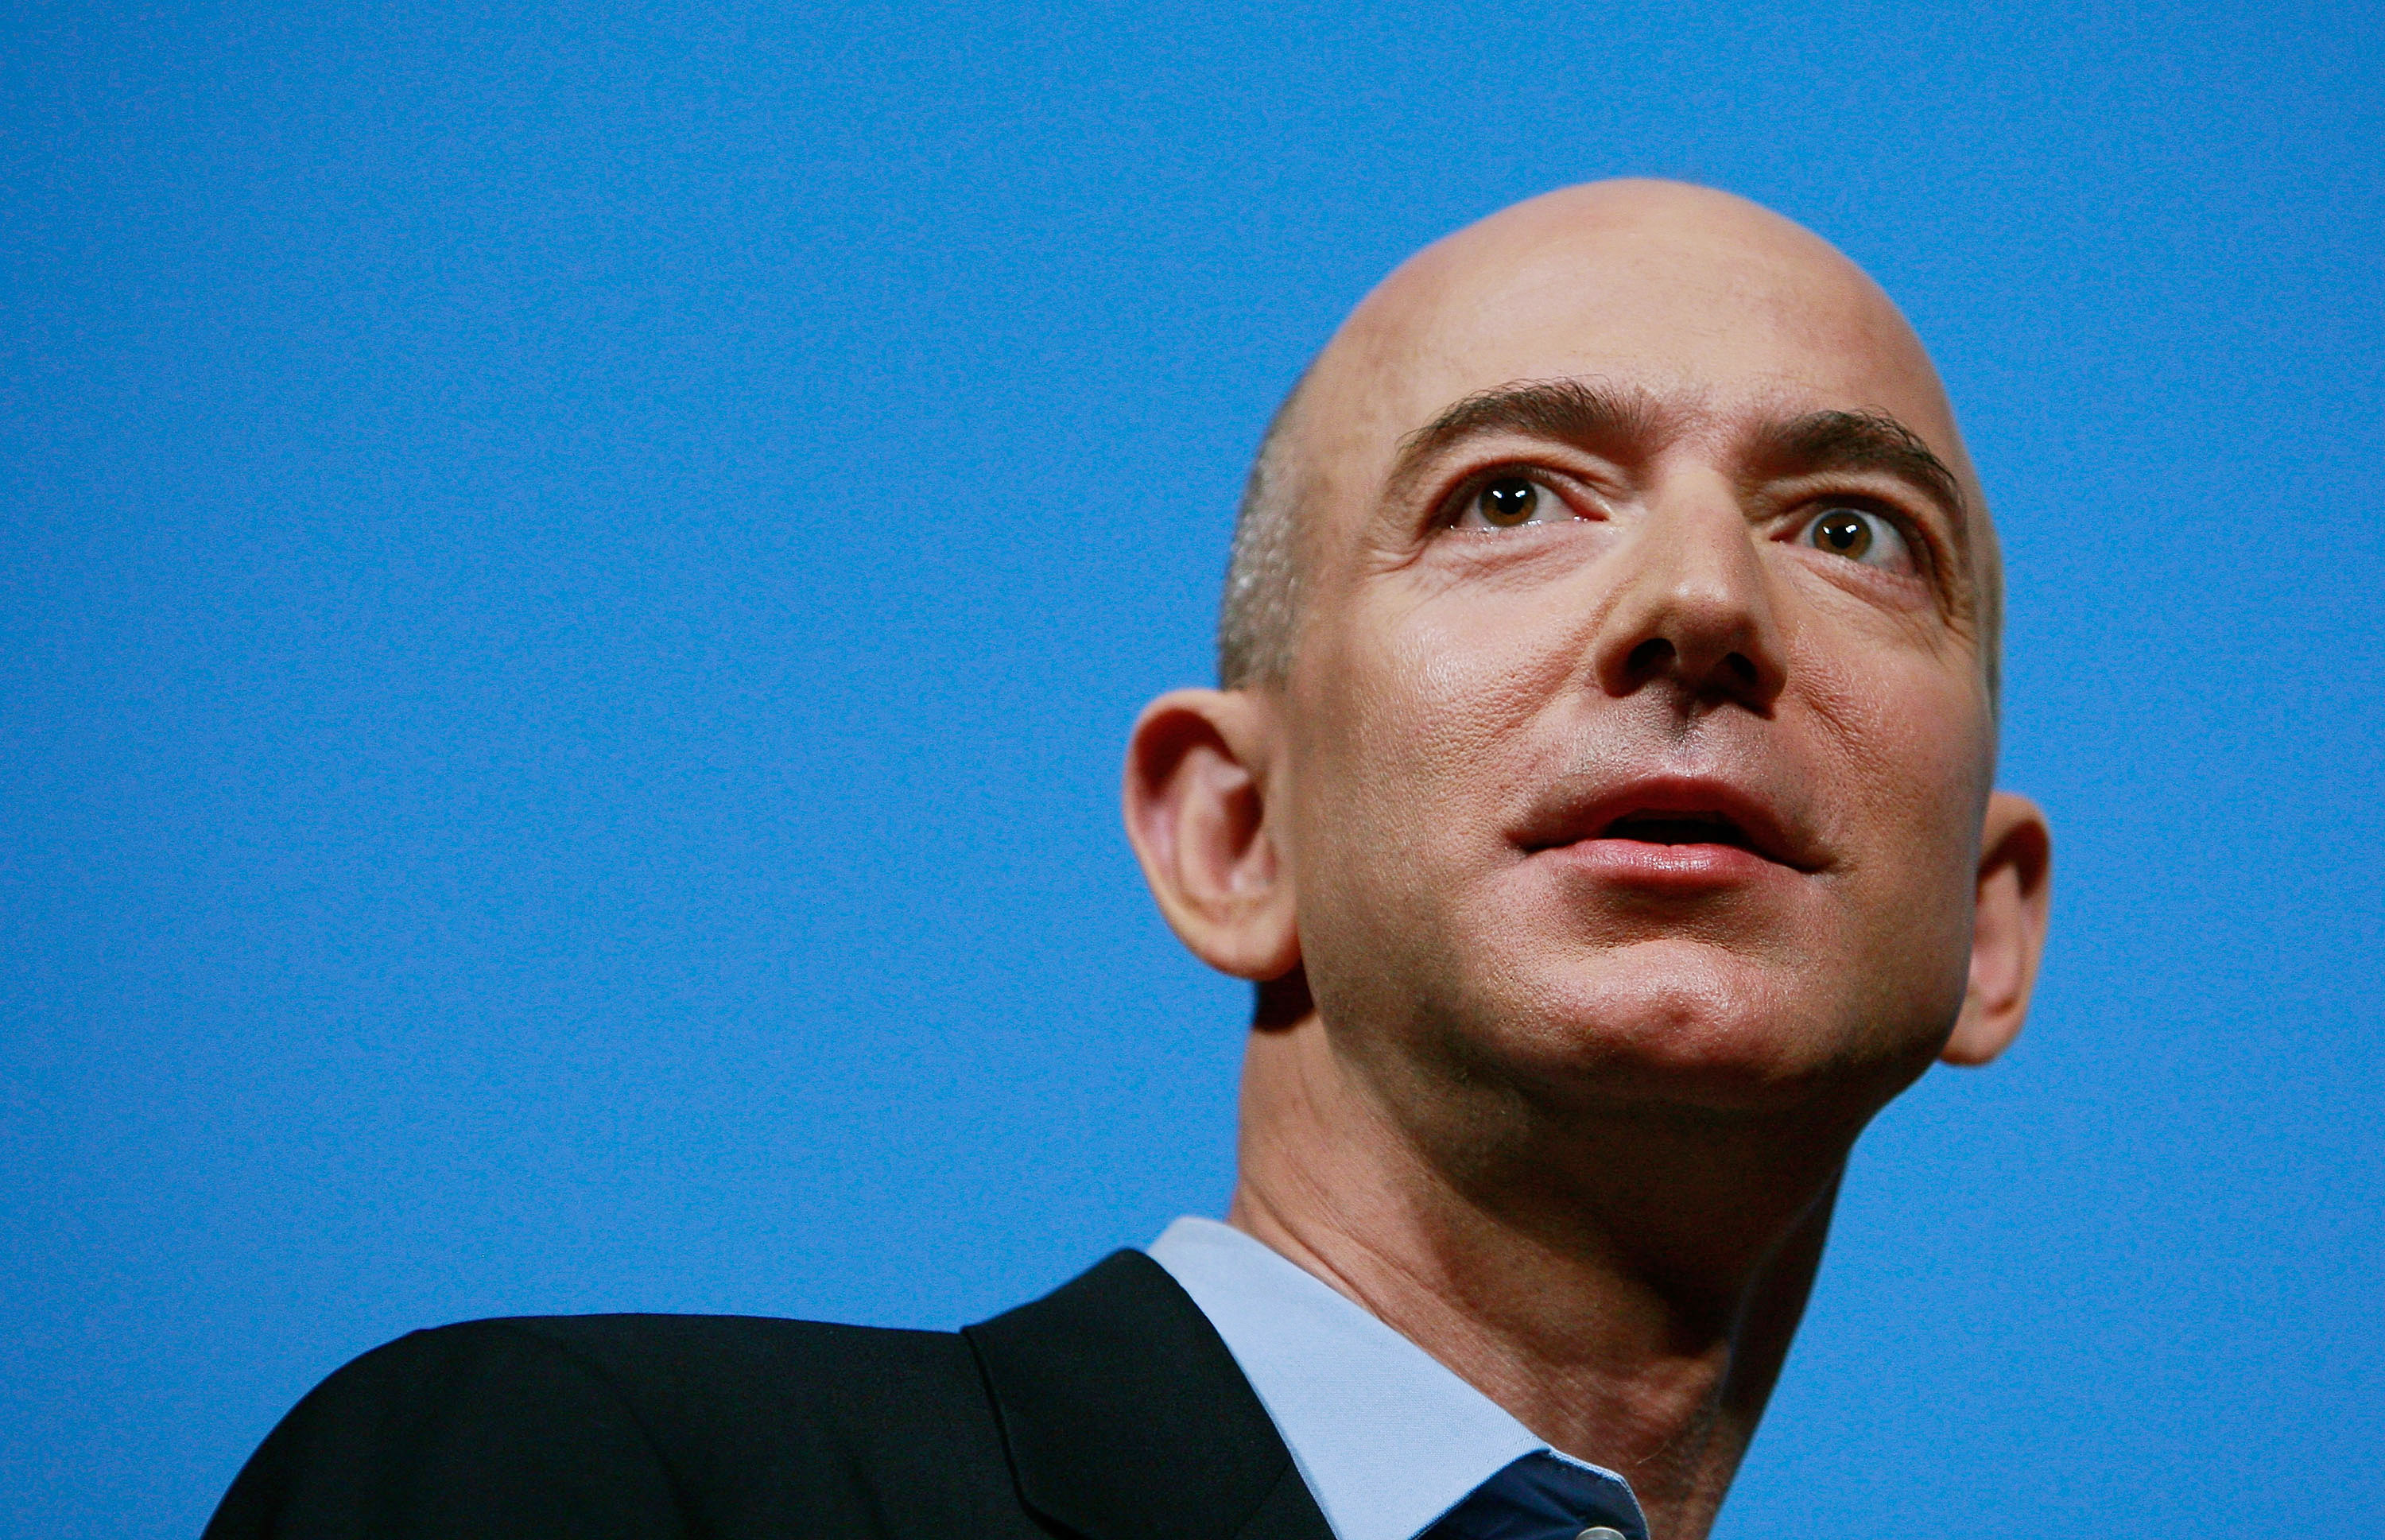 Jeff Bezos, mister Amazon: come è diventato l'uomo più ricco del pianeta?